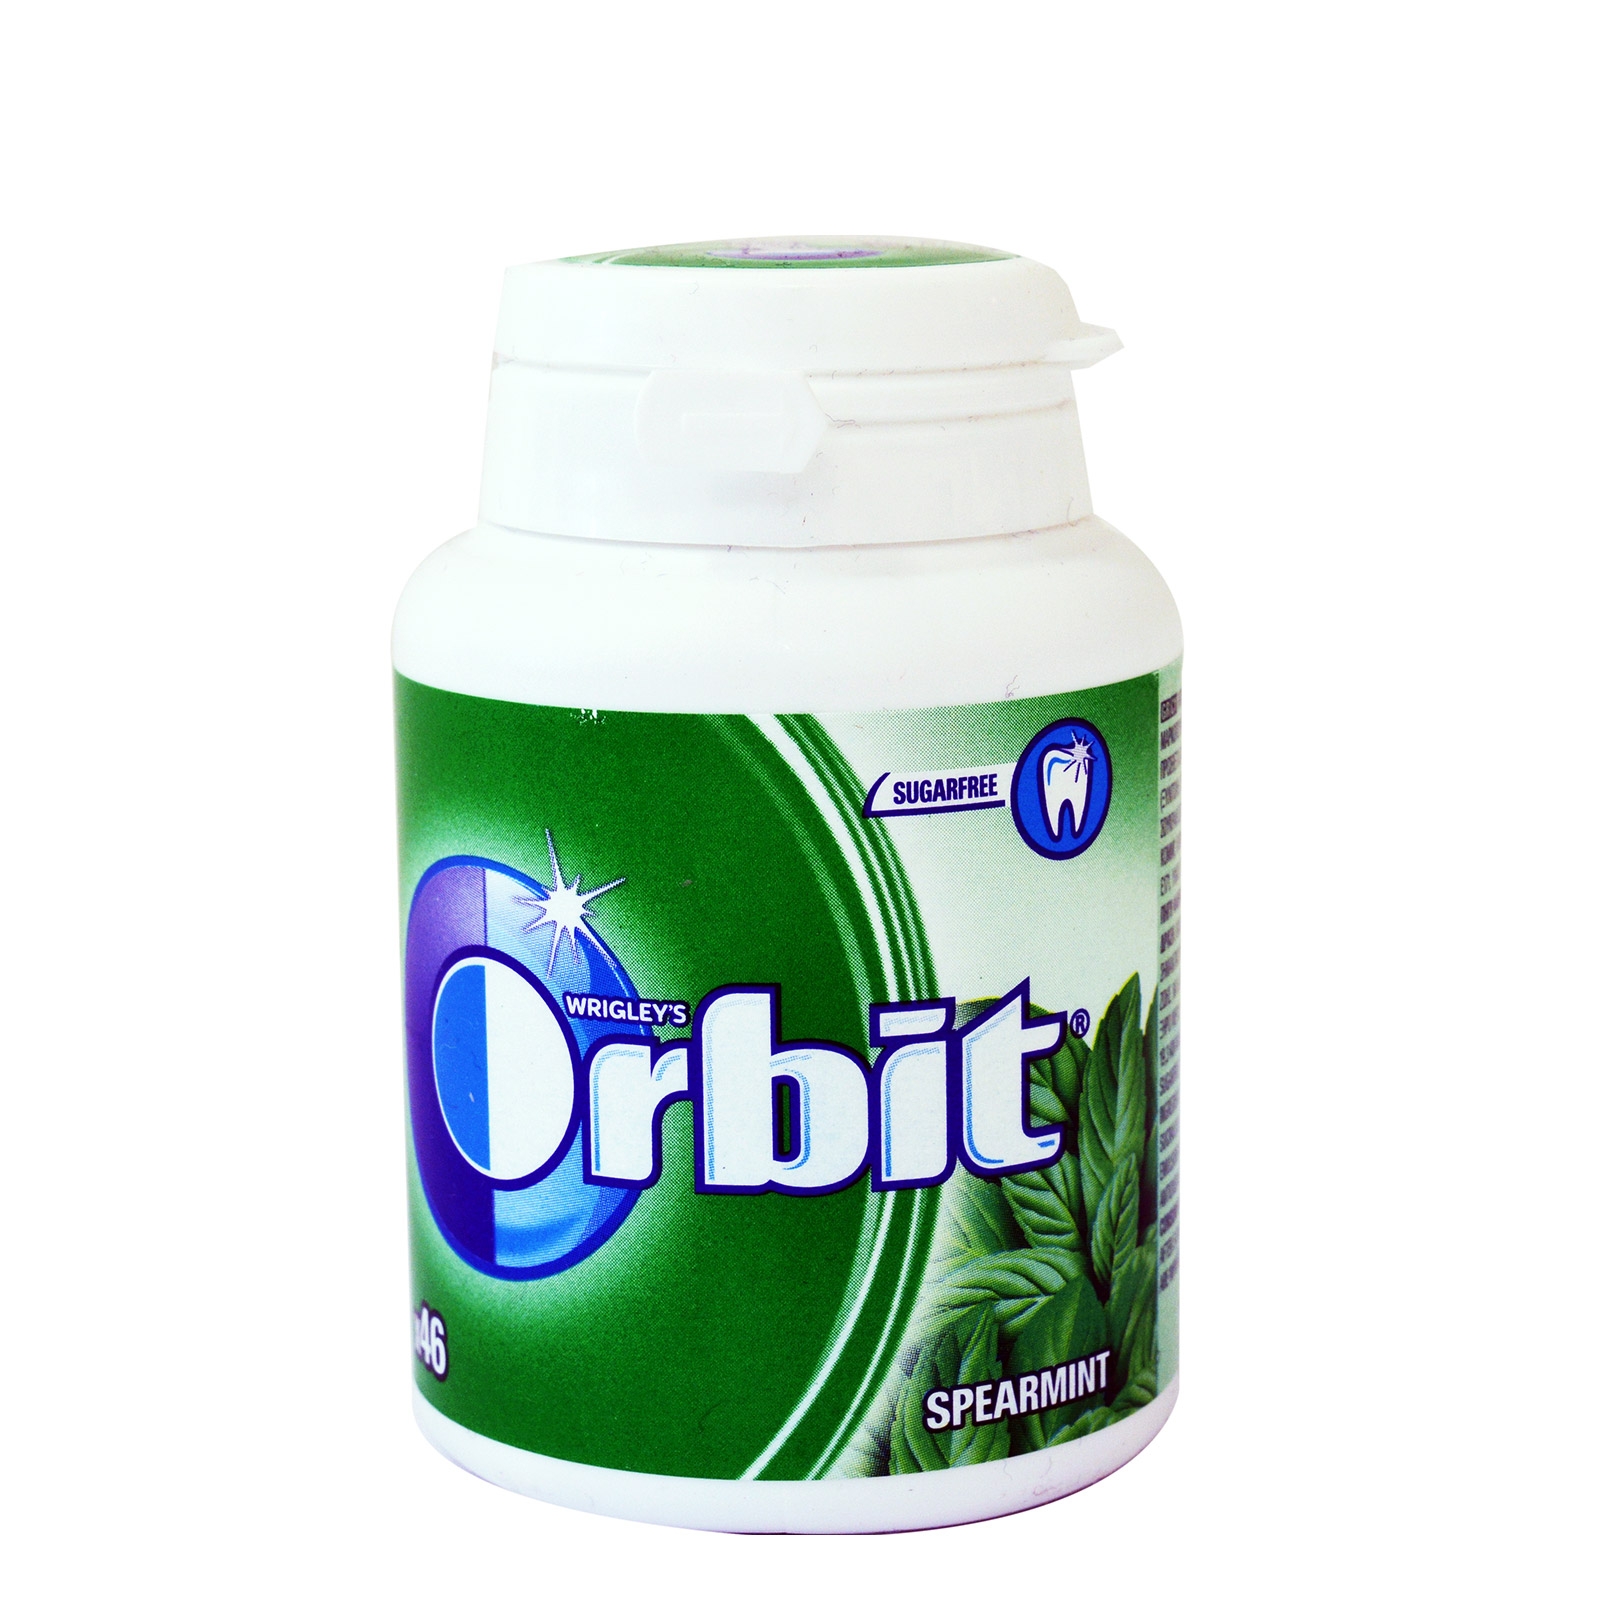 Orbit Spearmint - 4009900412117